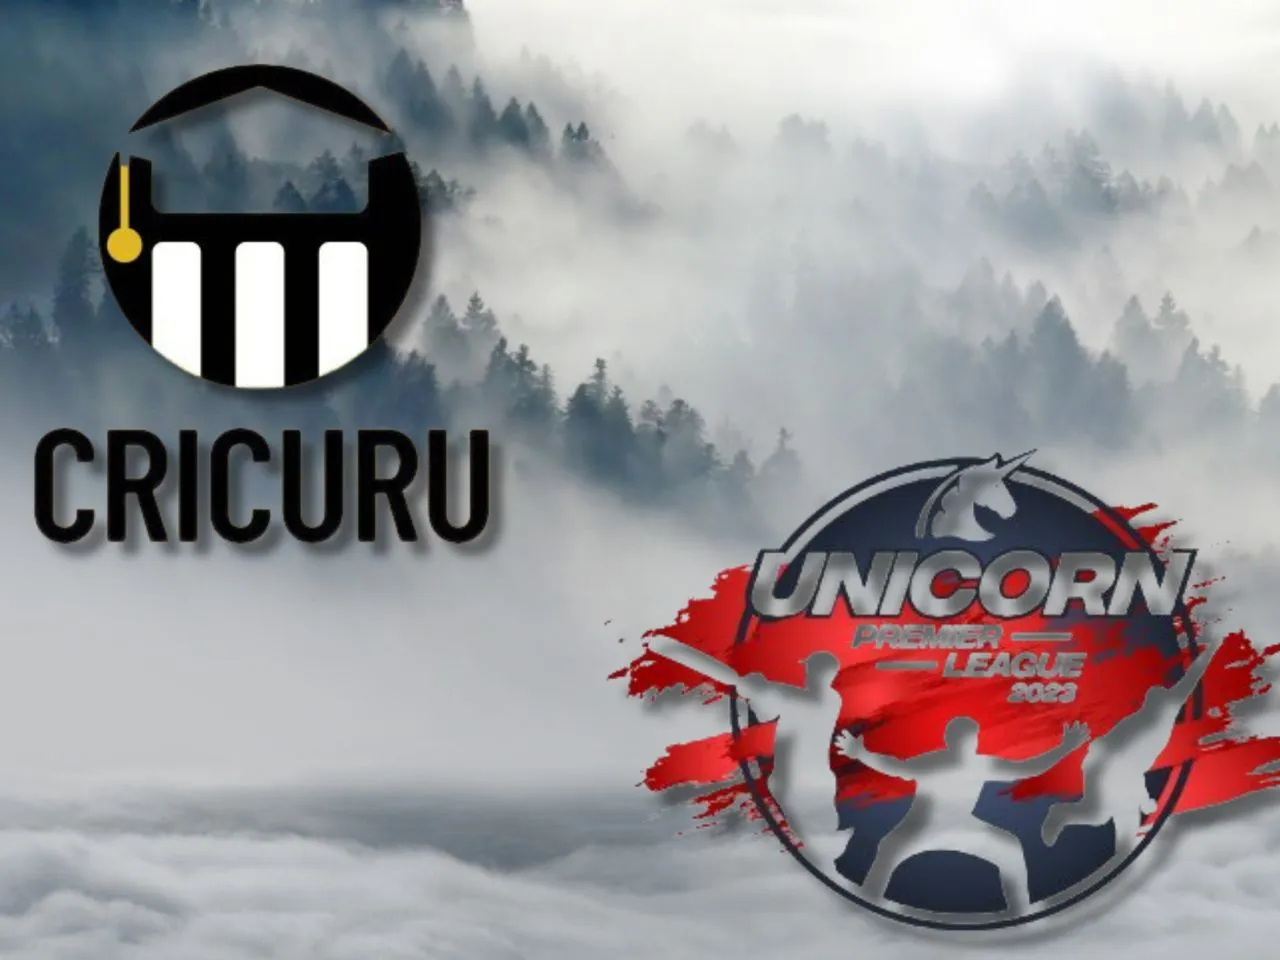 Edtech Startup Cricuru Unicorn Premier League